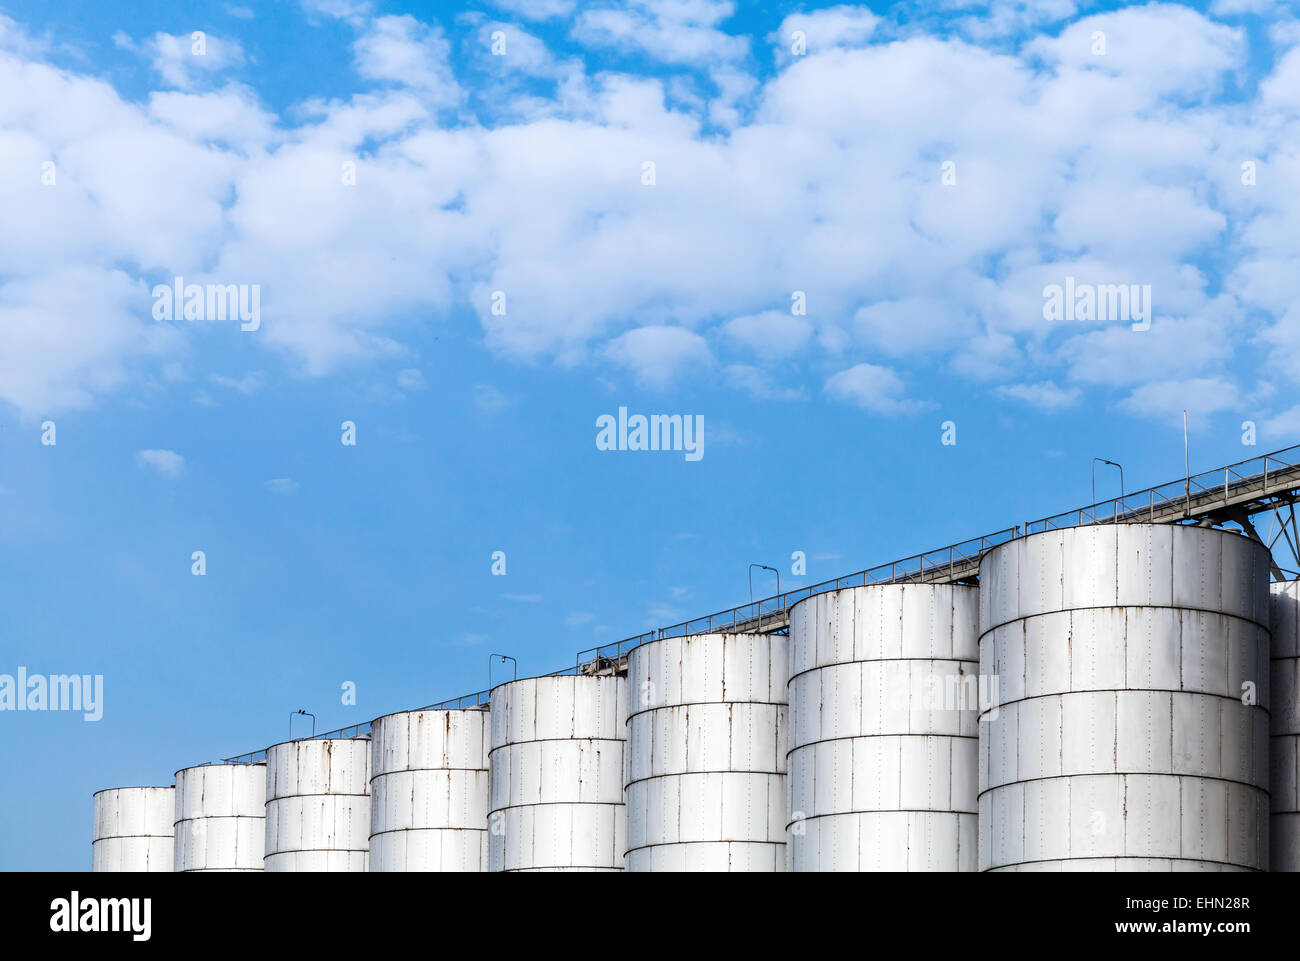 Abstrakte Industriearchitektur Fragment auf blauen Himmelshintergrund, glänzende Metall-Tanks für die Lagerung von Schüttgütern Stockfoto